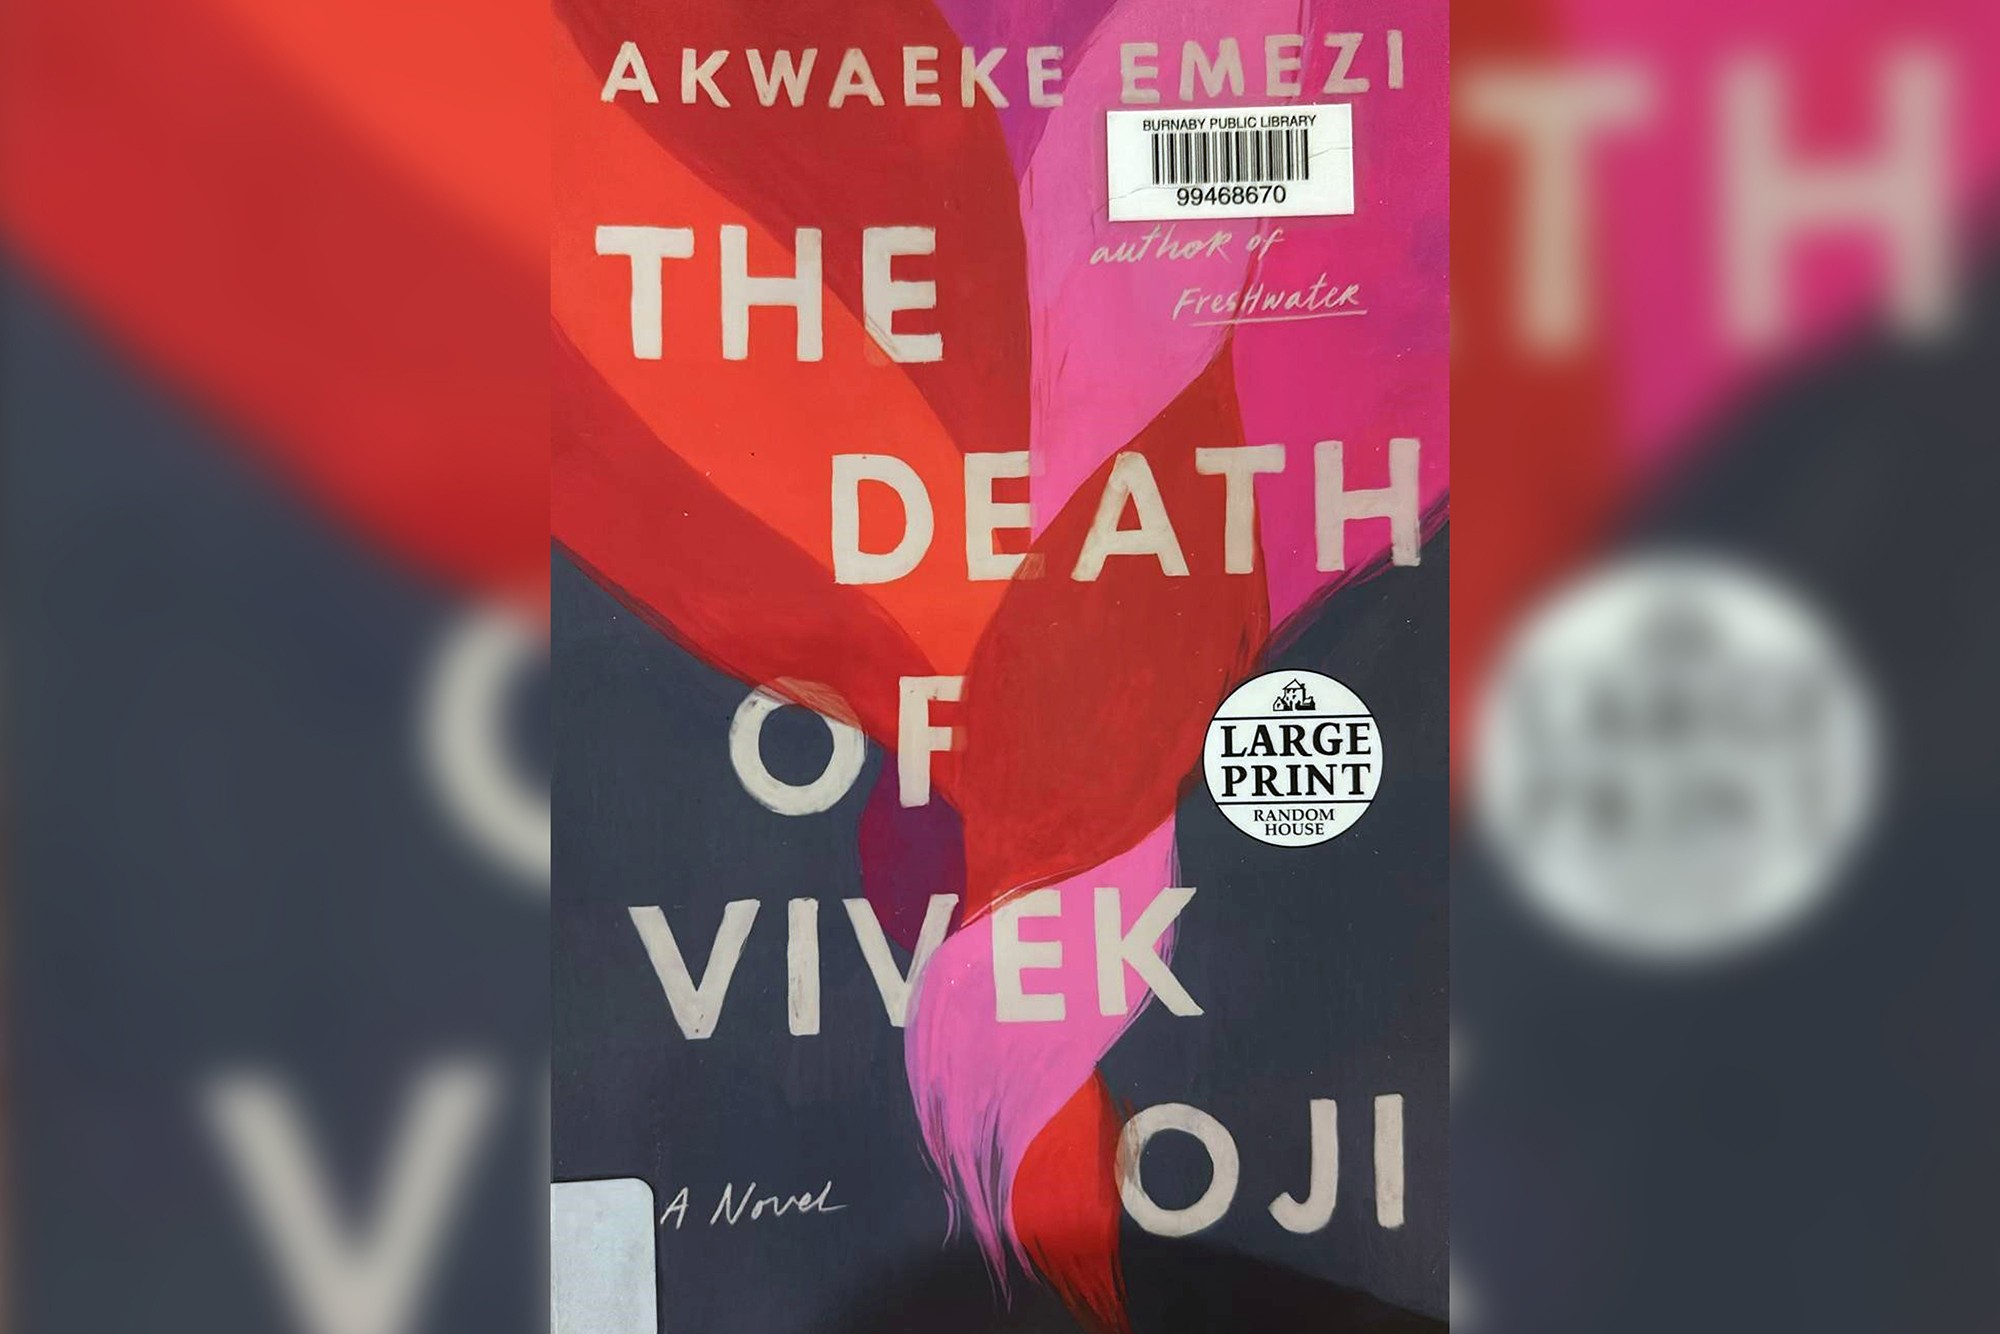 A copy of The Death of Vivek Oji by Akwaeke Emezi